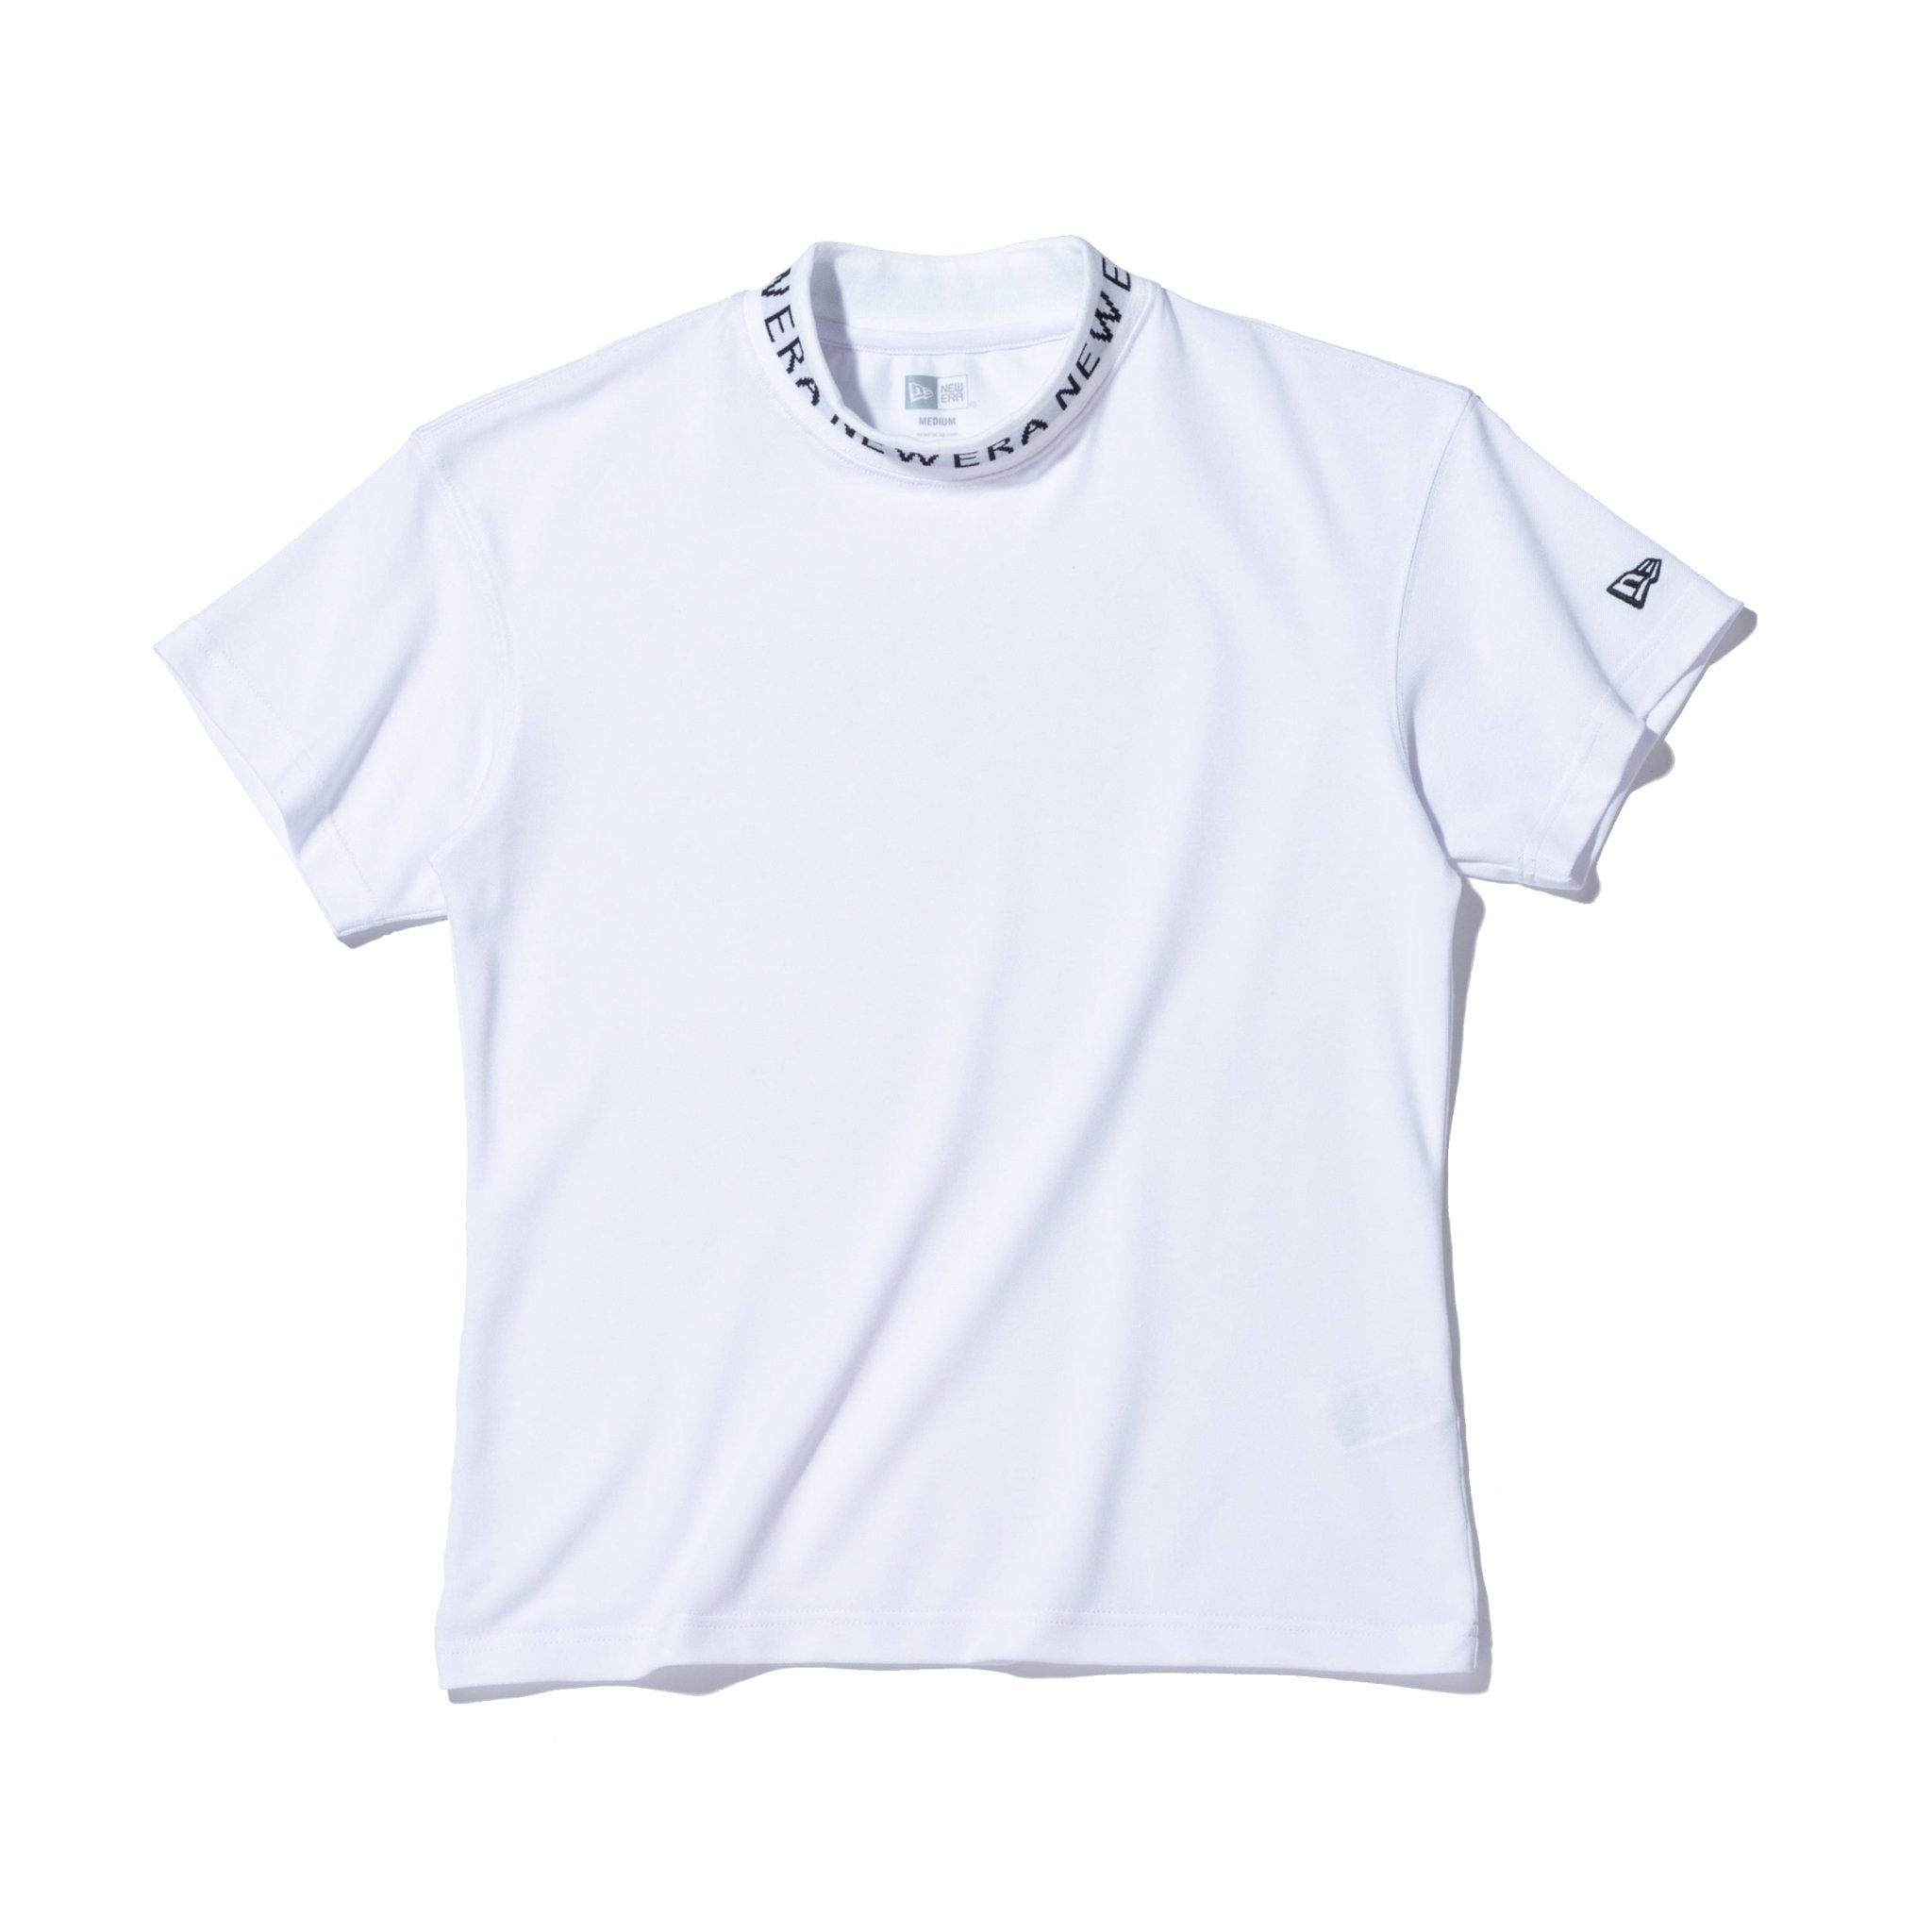 【ゴルフ】 WOMEN'S ミッドネック パフォーマンス Tシャツ